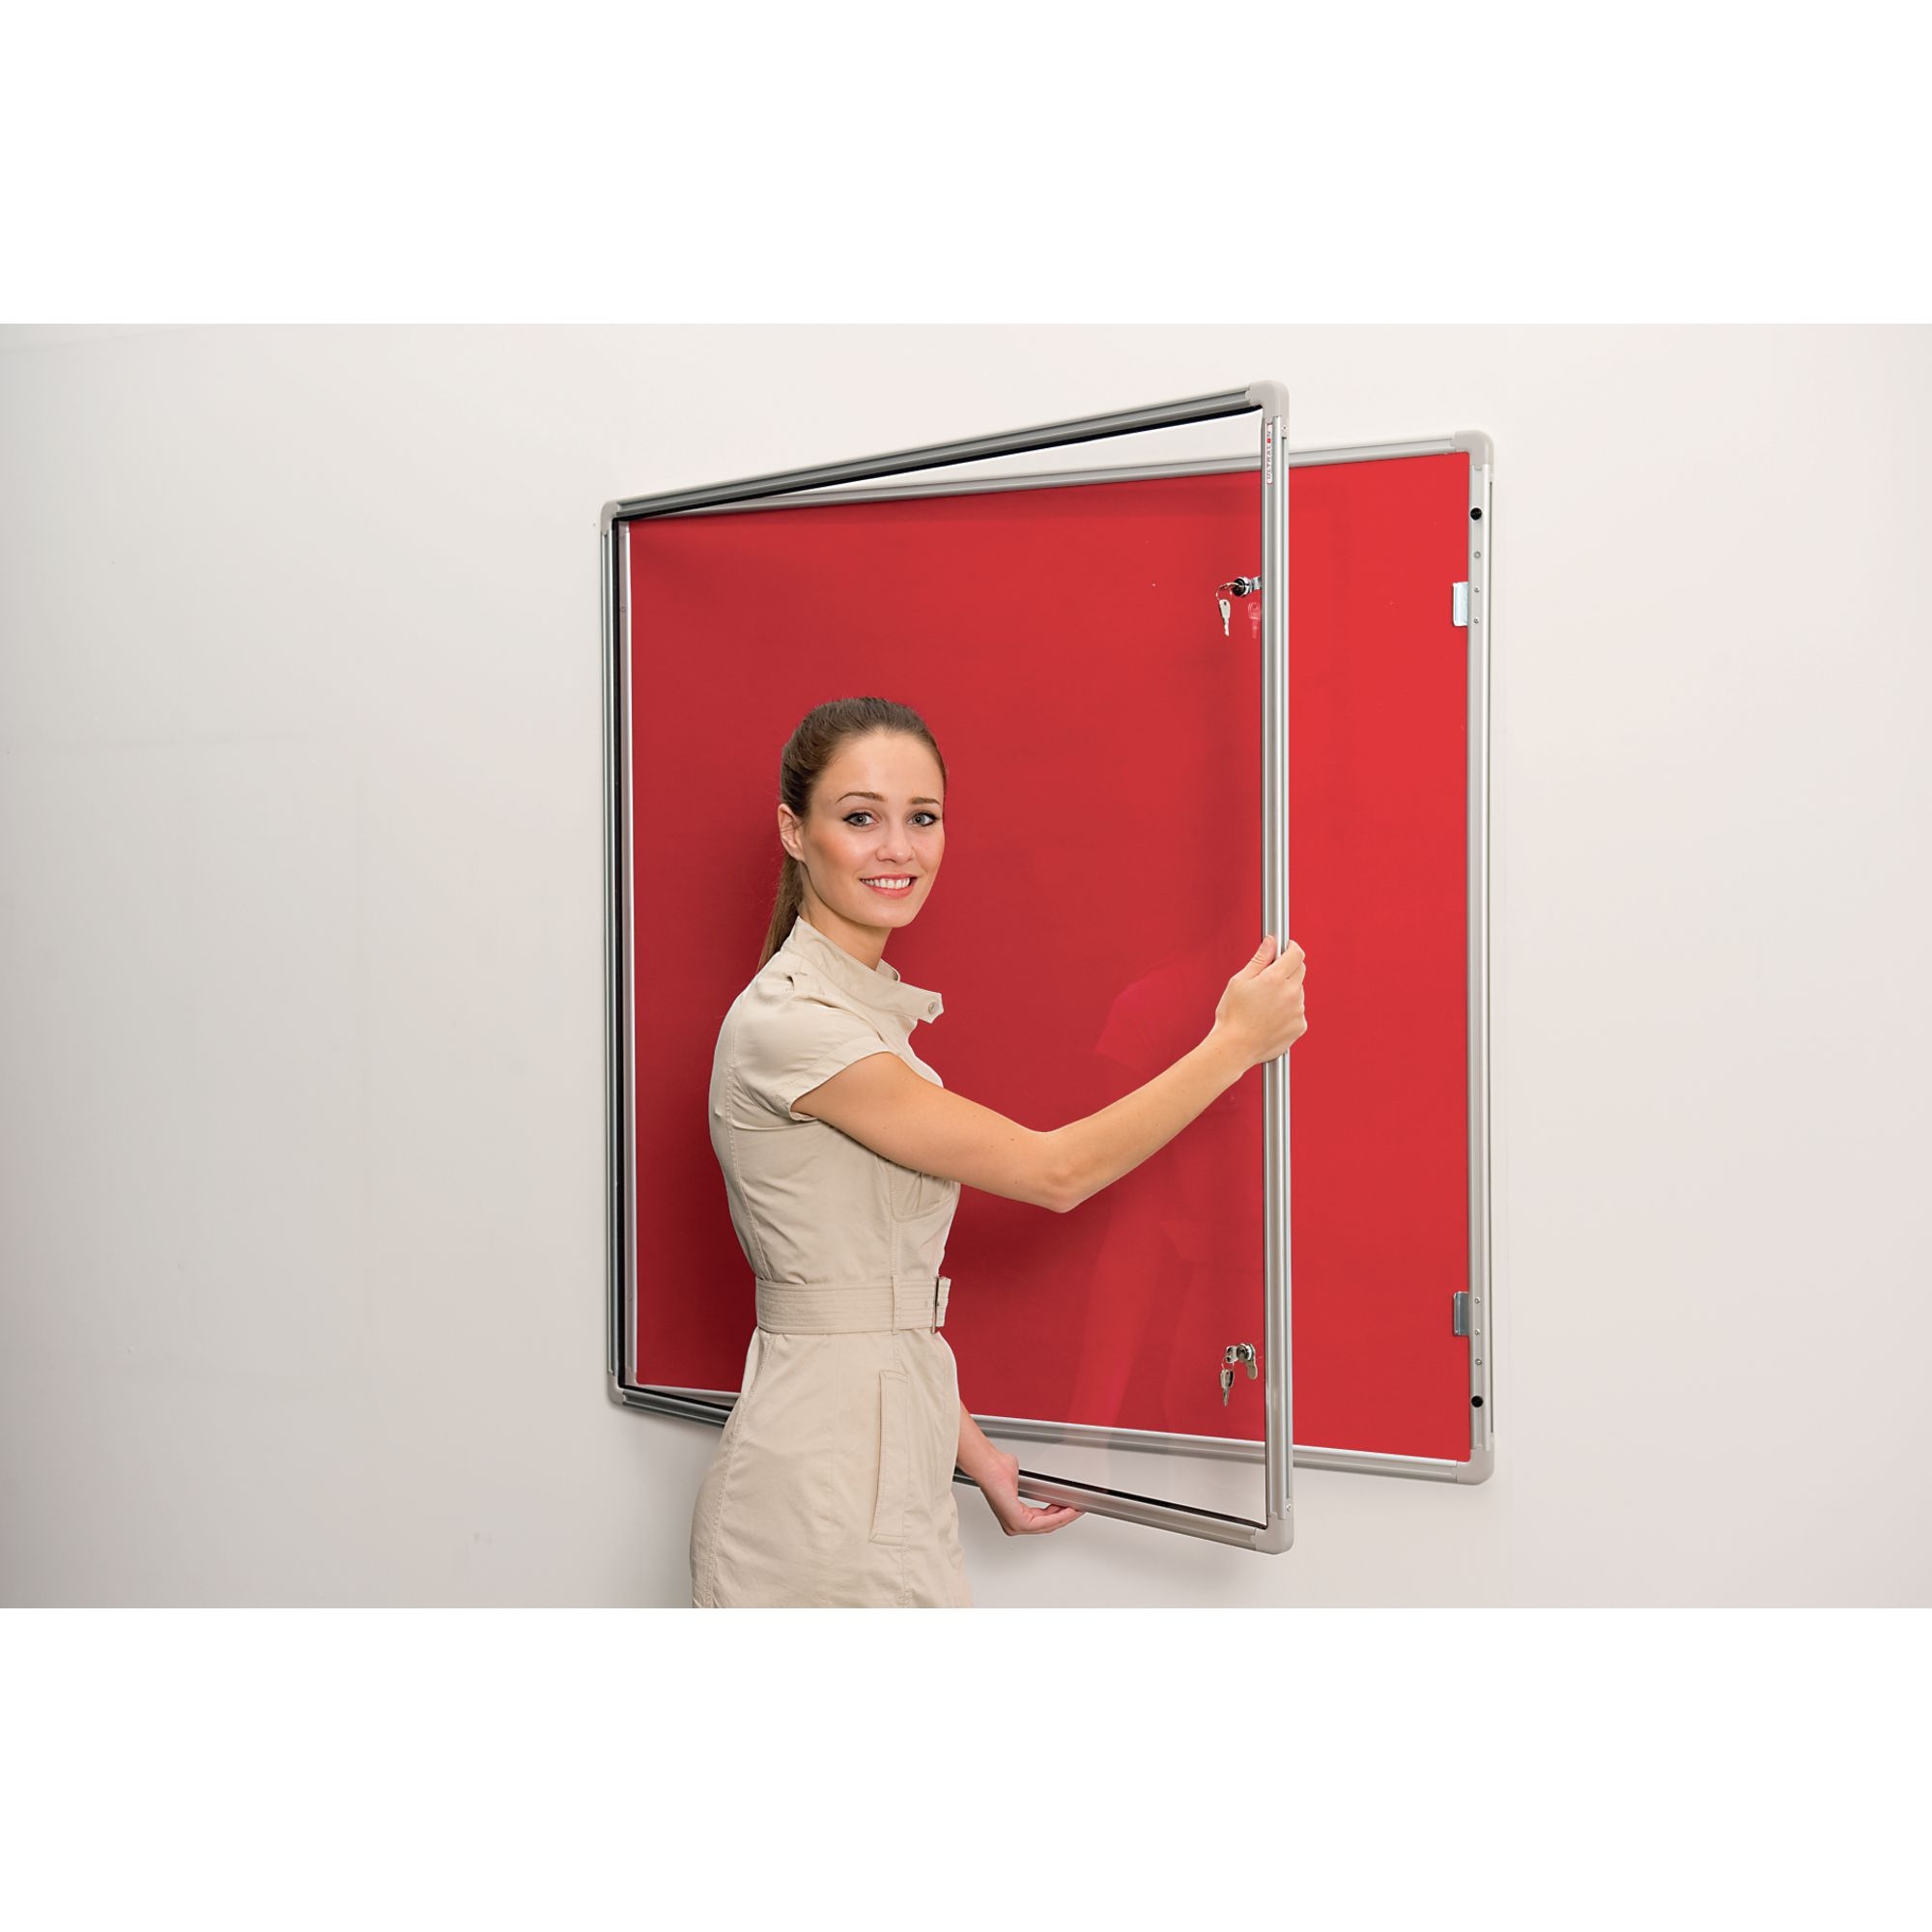 Lockable Aluminium Framed Noticeboards - Red 24x12